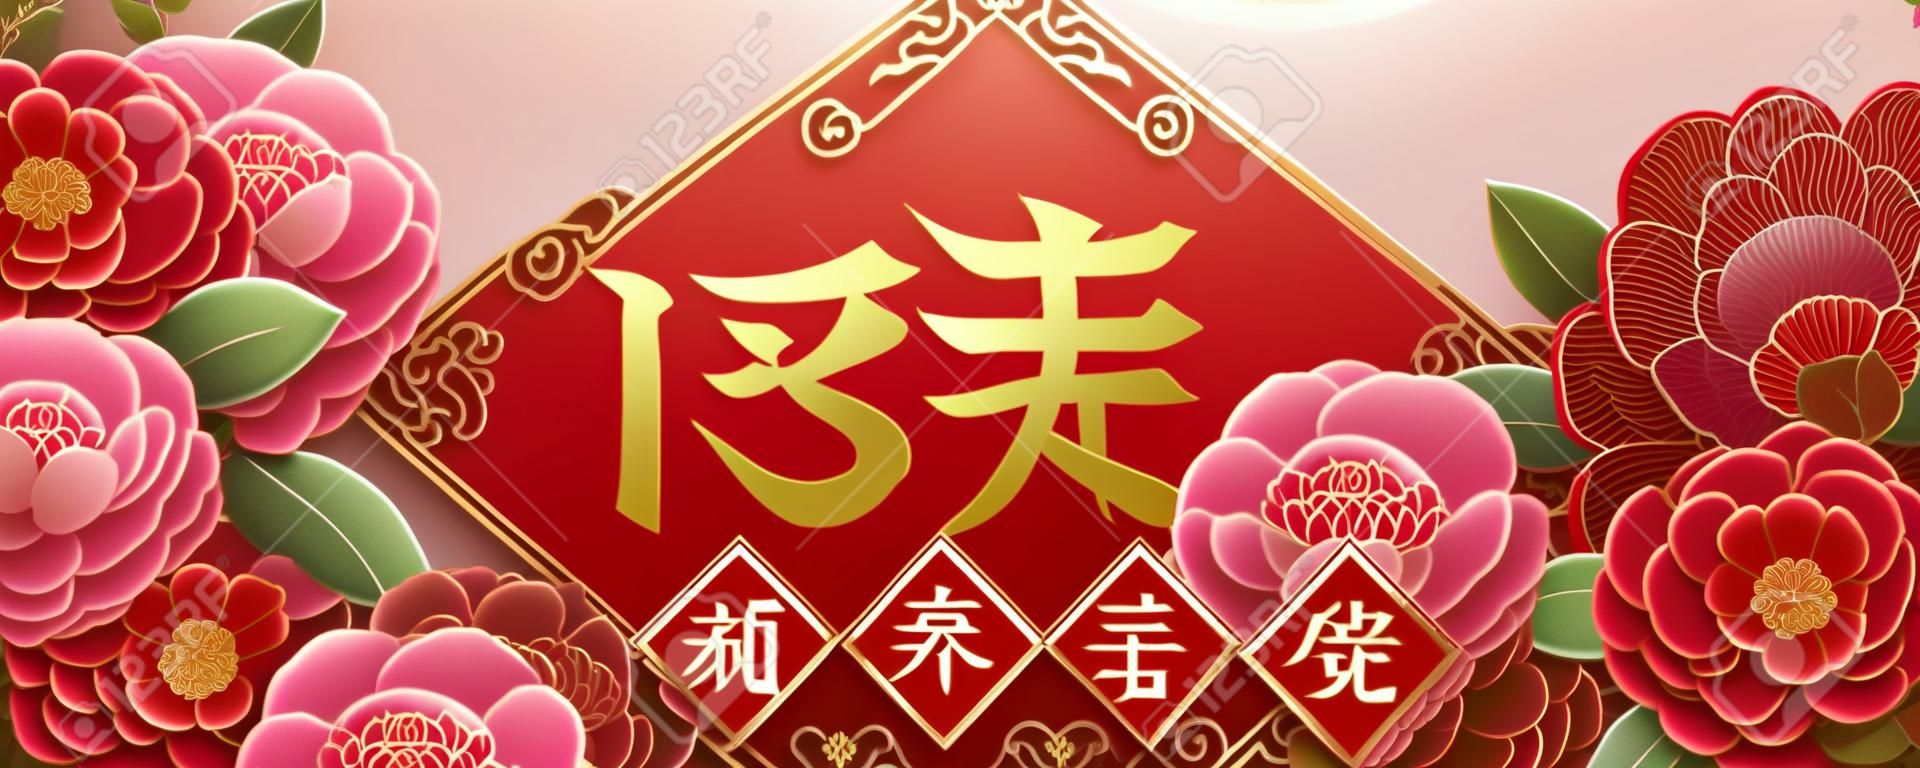 Projeto do ano lunar com flores bonitas da peônia, primavera escrita na palavra chinesa no meio